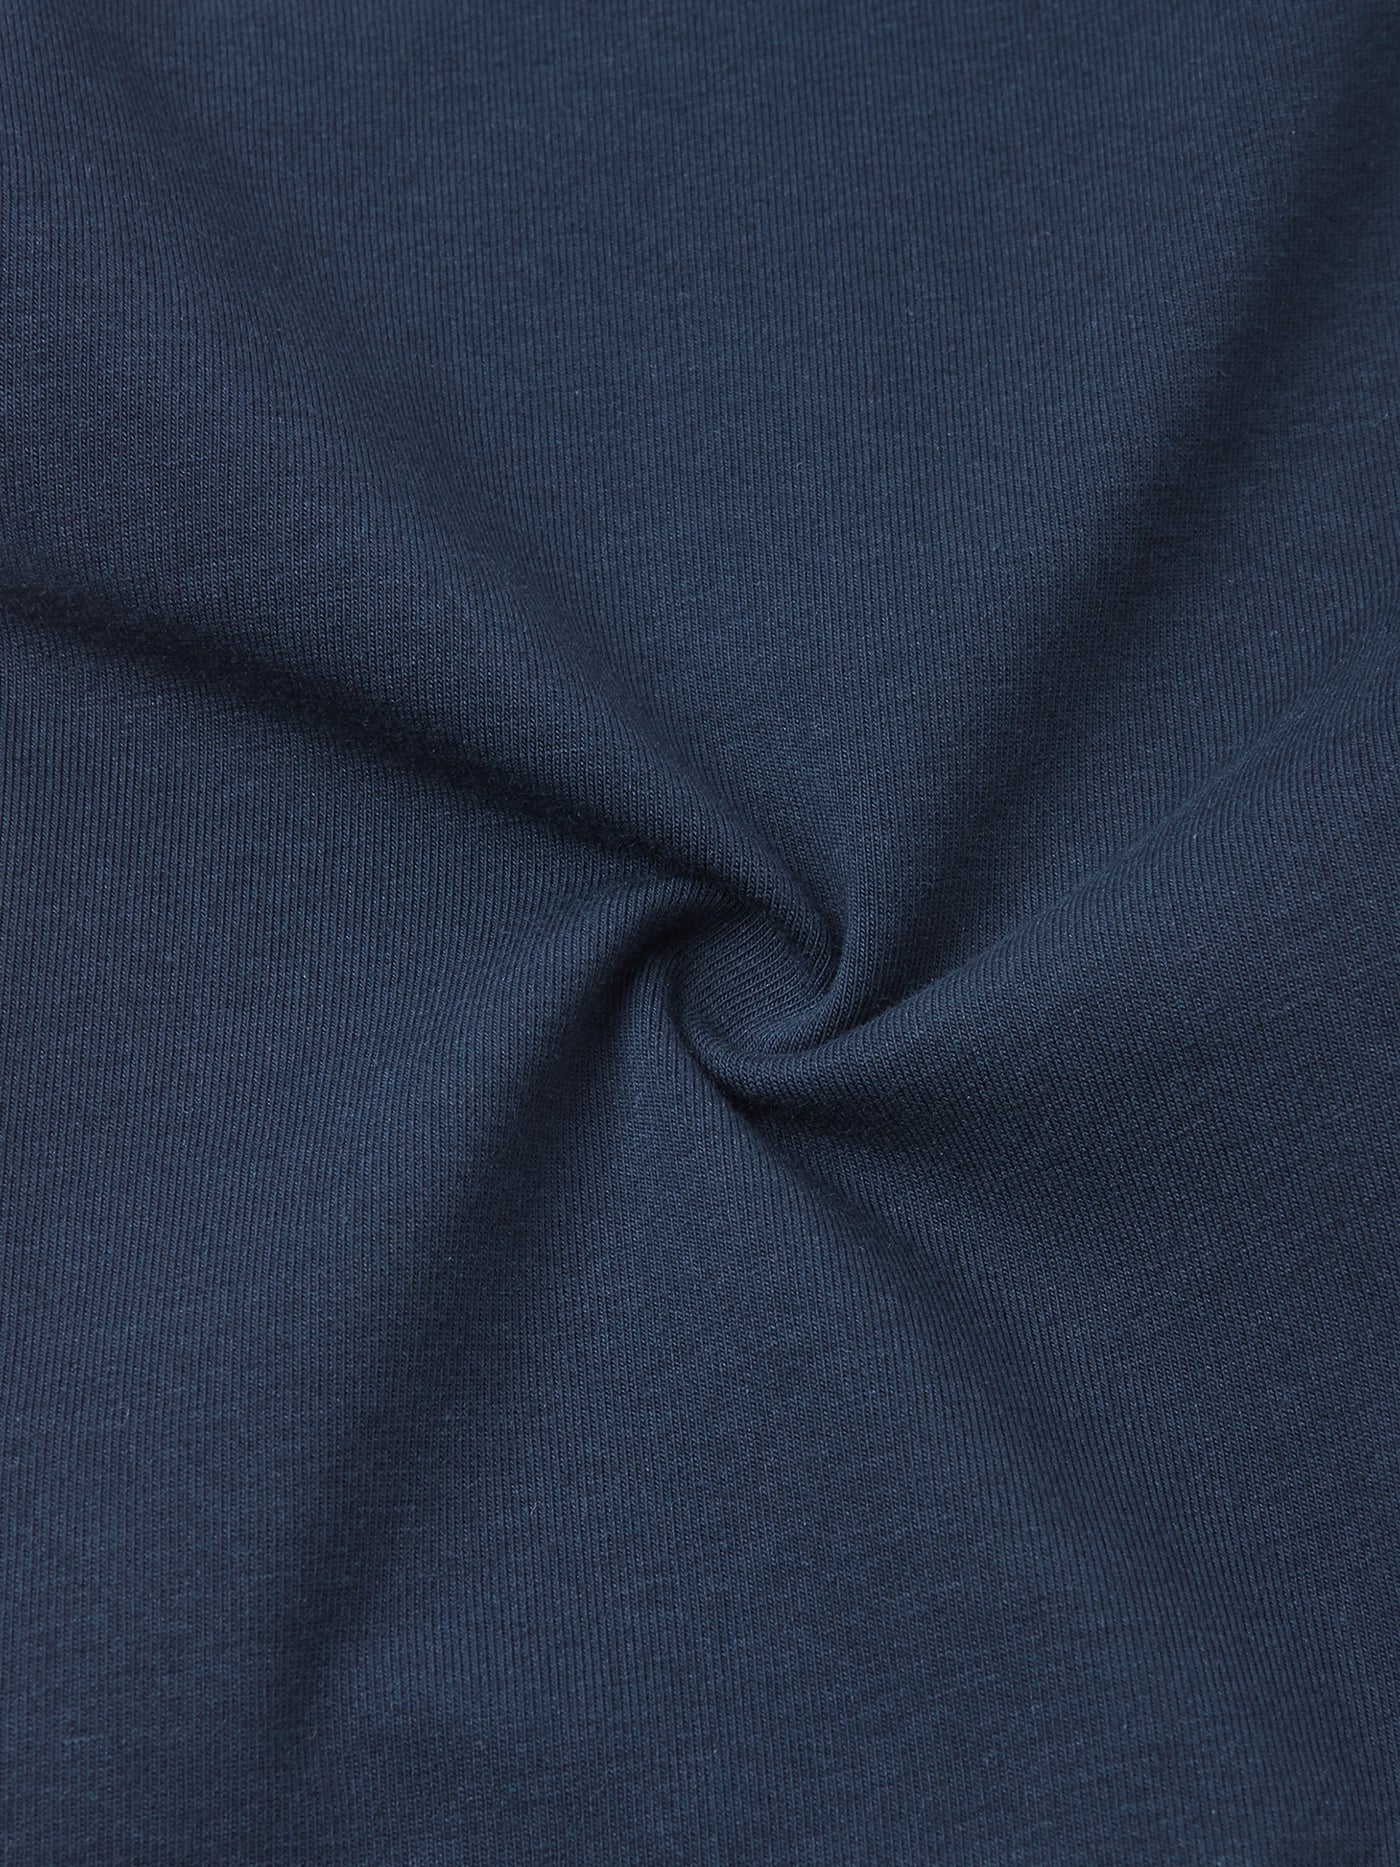 Reiman tummansiniset Anti-Bite Pistoton leggingsien materiaali kuvattuna